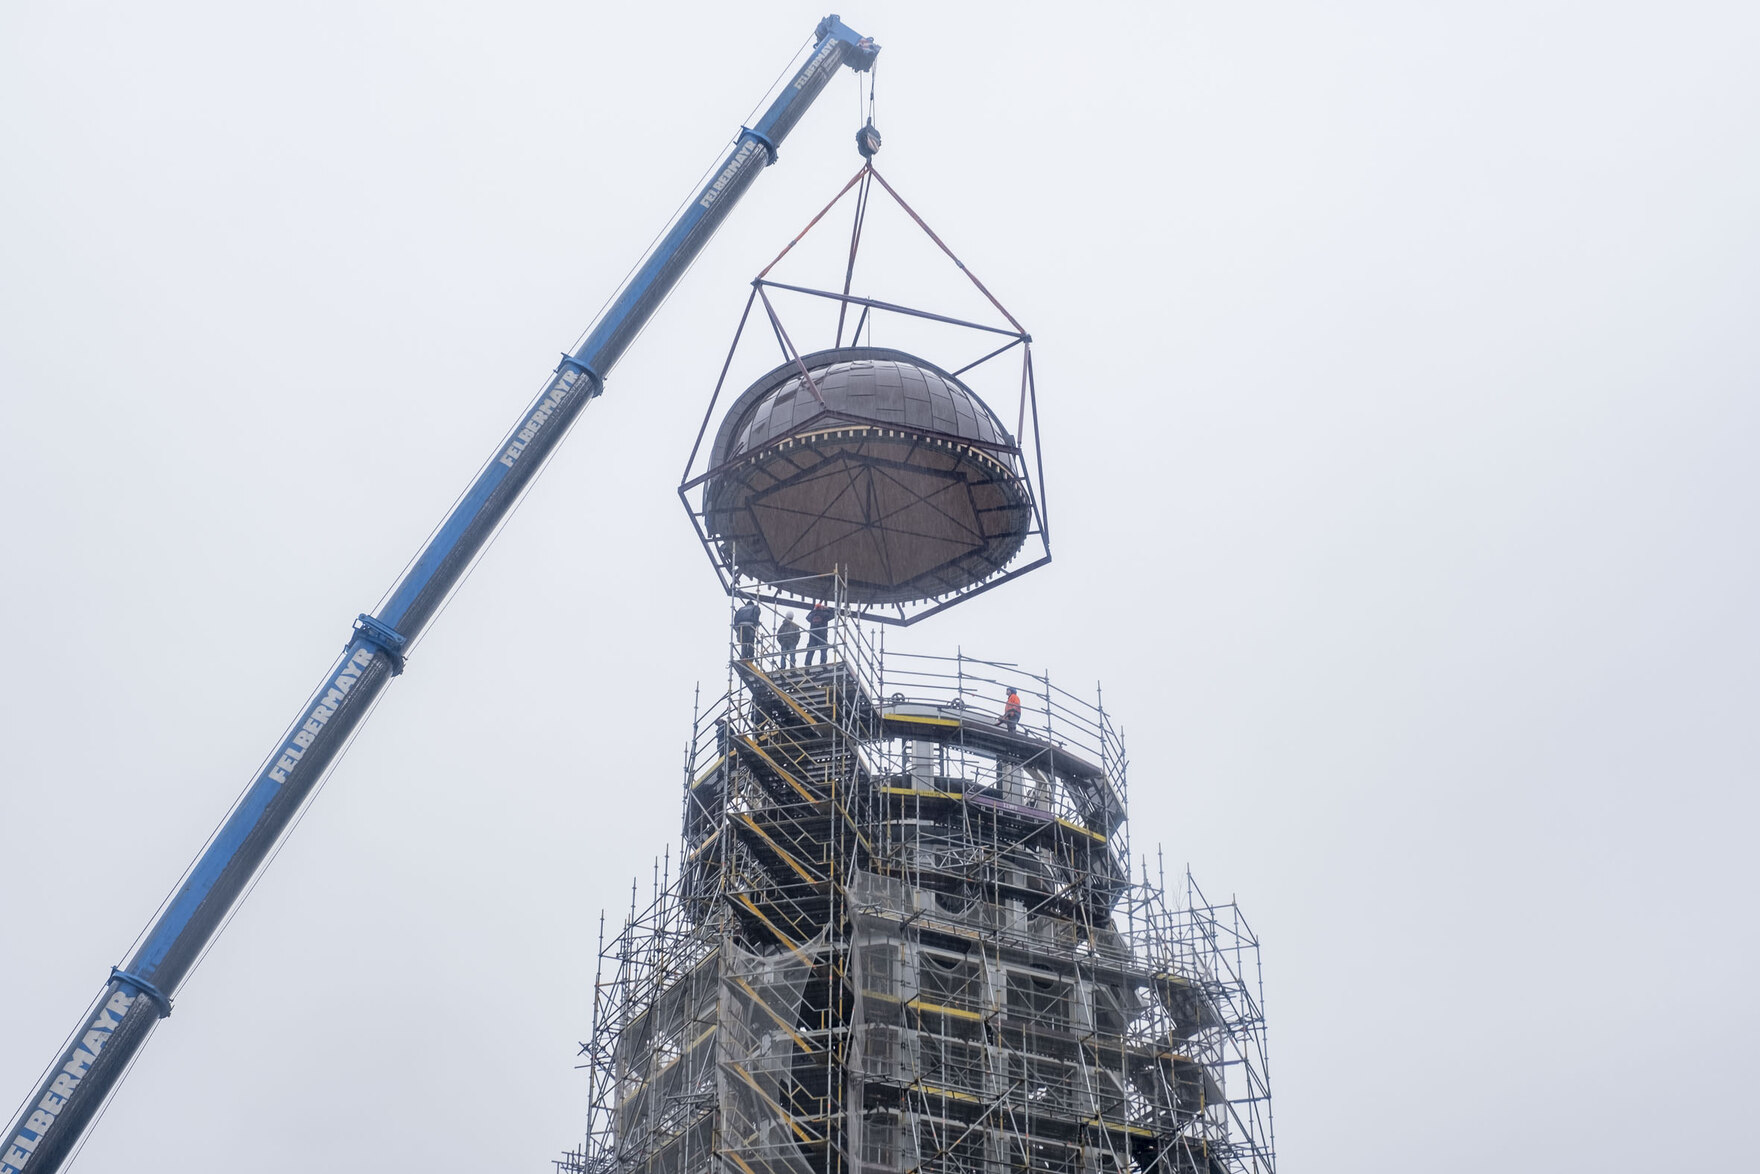 Nachtrag: Wie geplant wurde die Kuppel am 19.10.2023 montiert. Bei strömenden Regen wird die Kuppel durch einen Kran auf die sanierte Konstruktion aufgesetzt und Arbeiter montieren sie von aufgestellten Gerüsten aus.